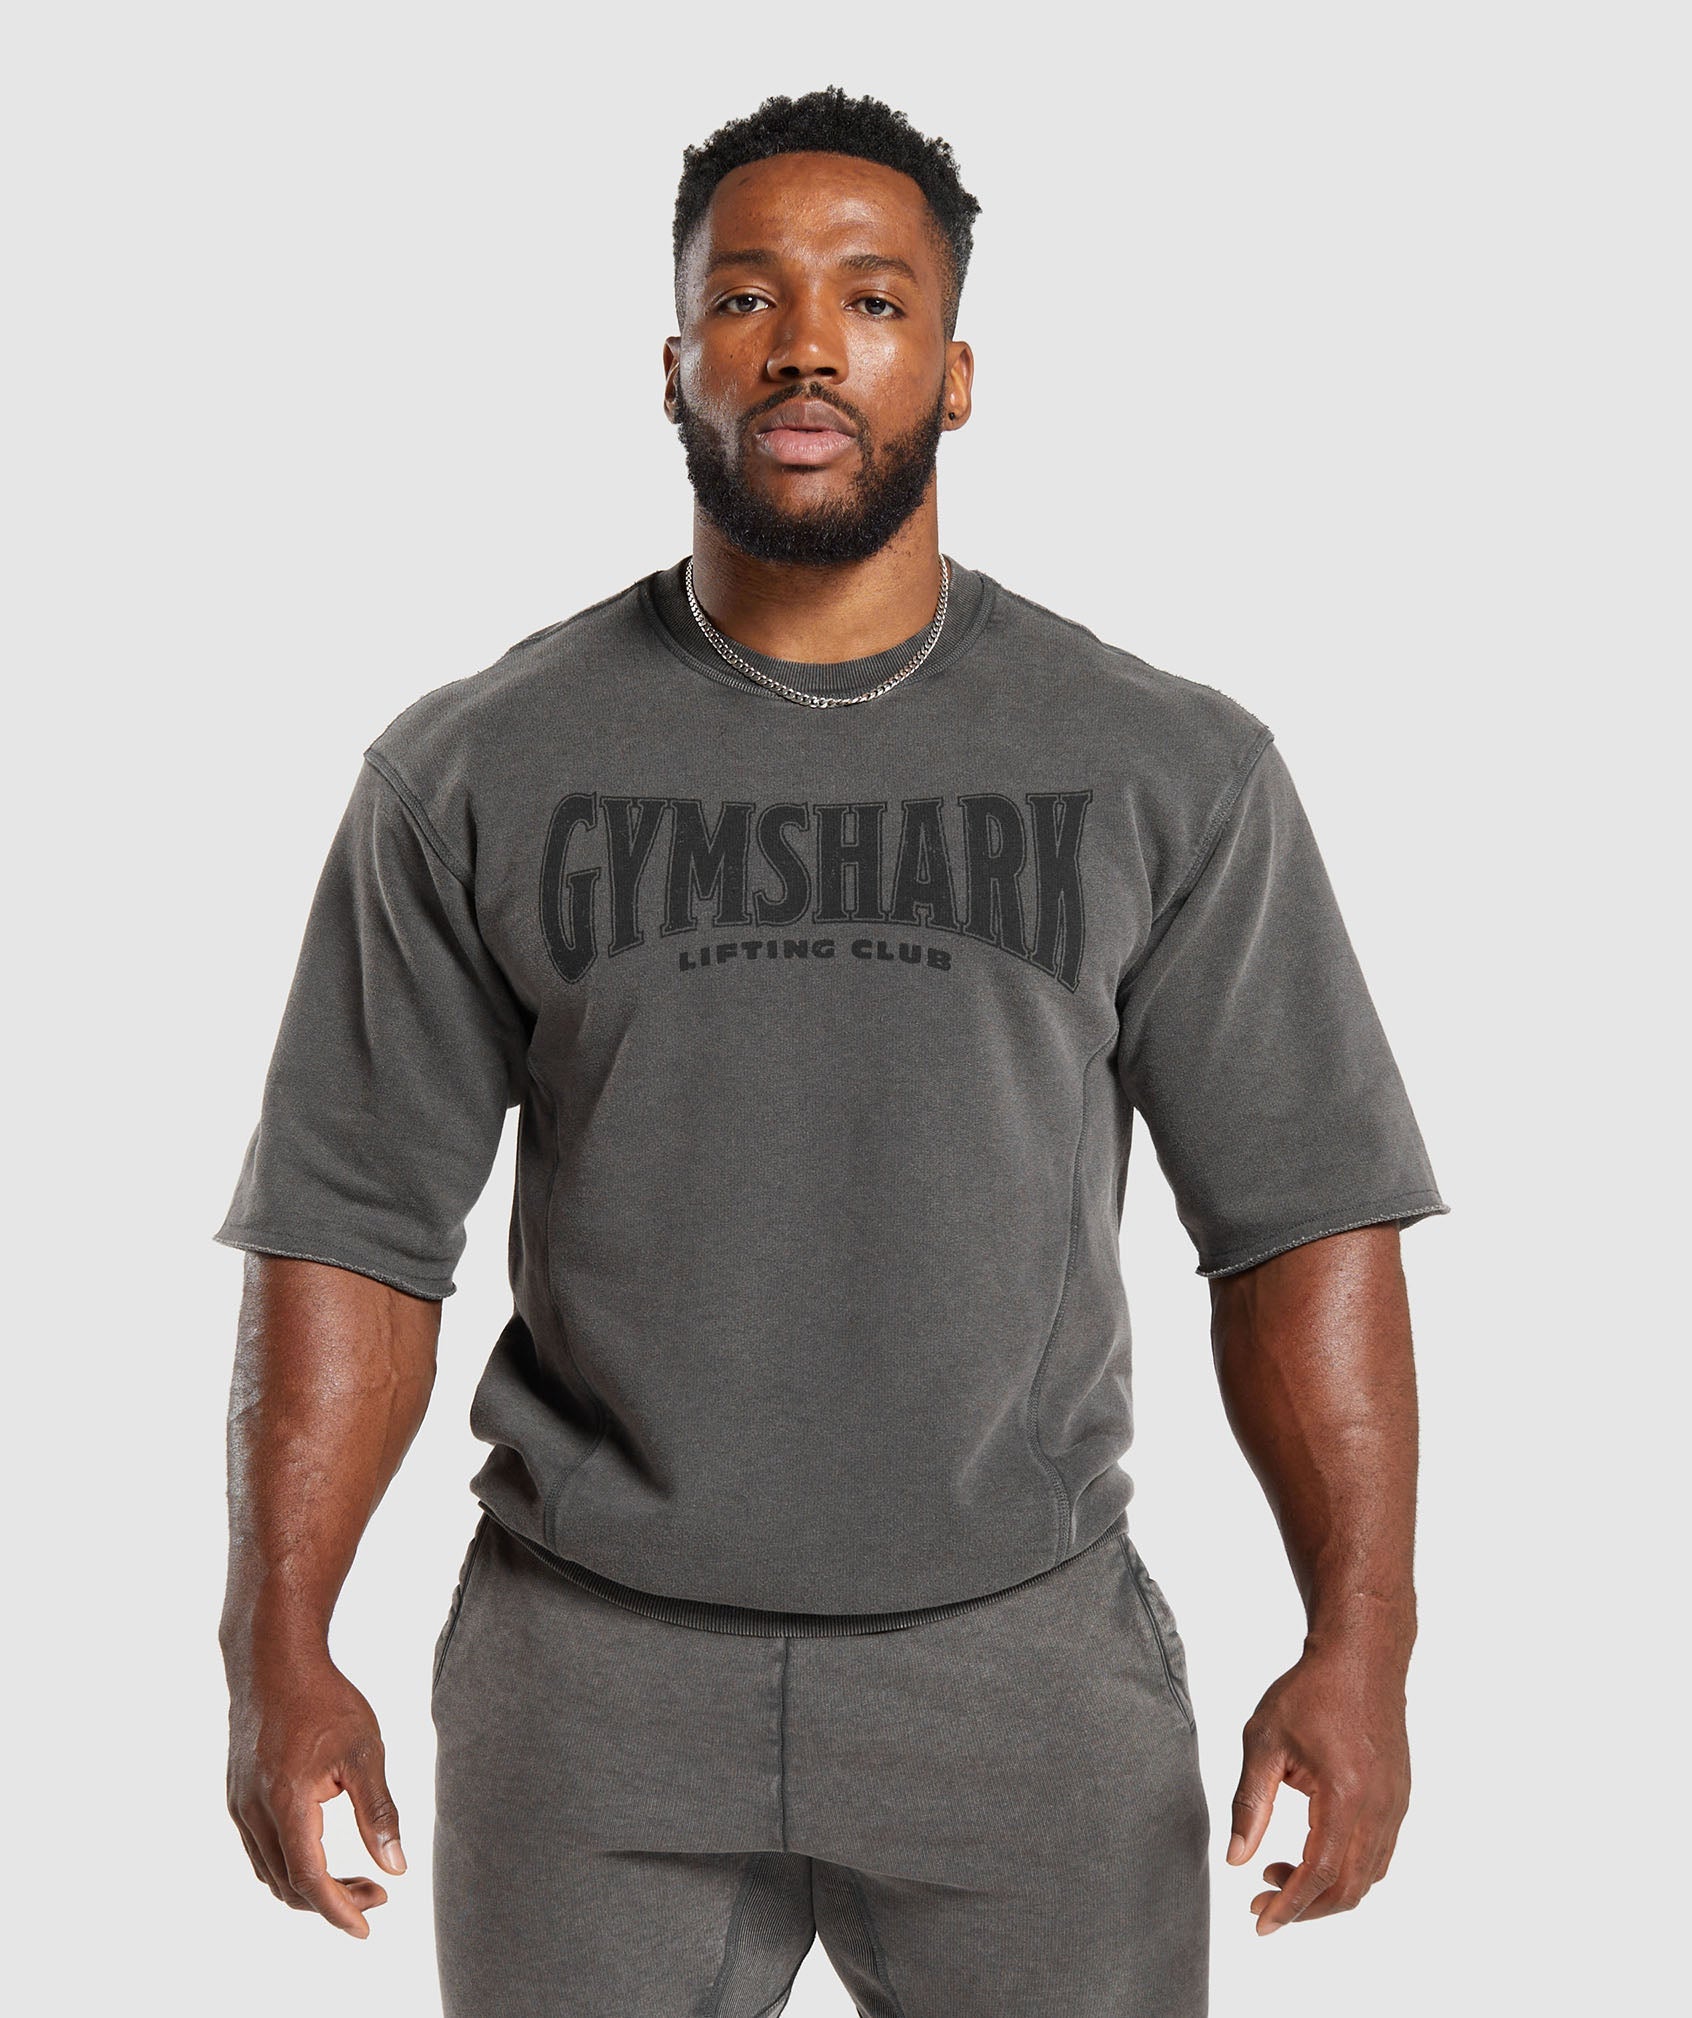 Men's Gym Sets & Workout Sets - Gymshark